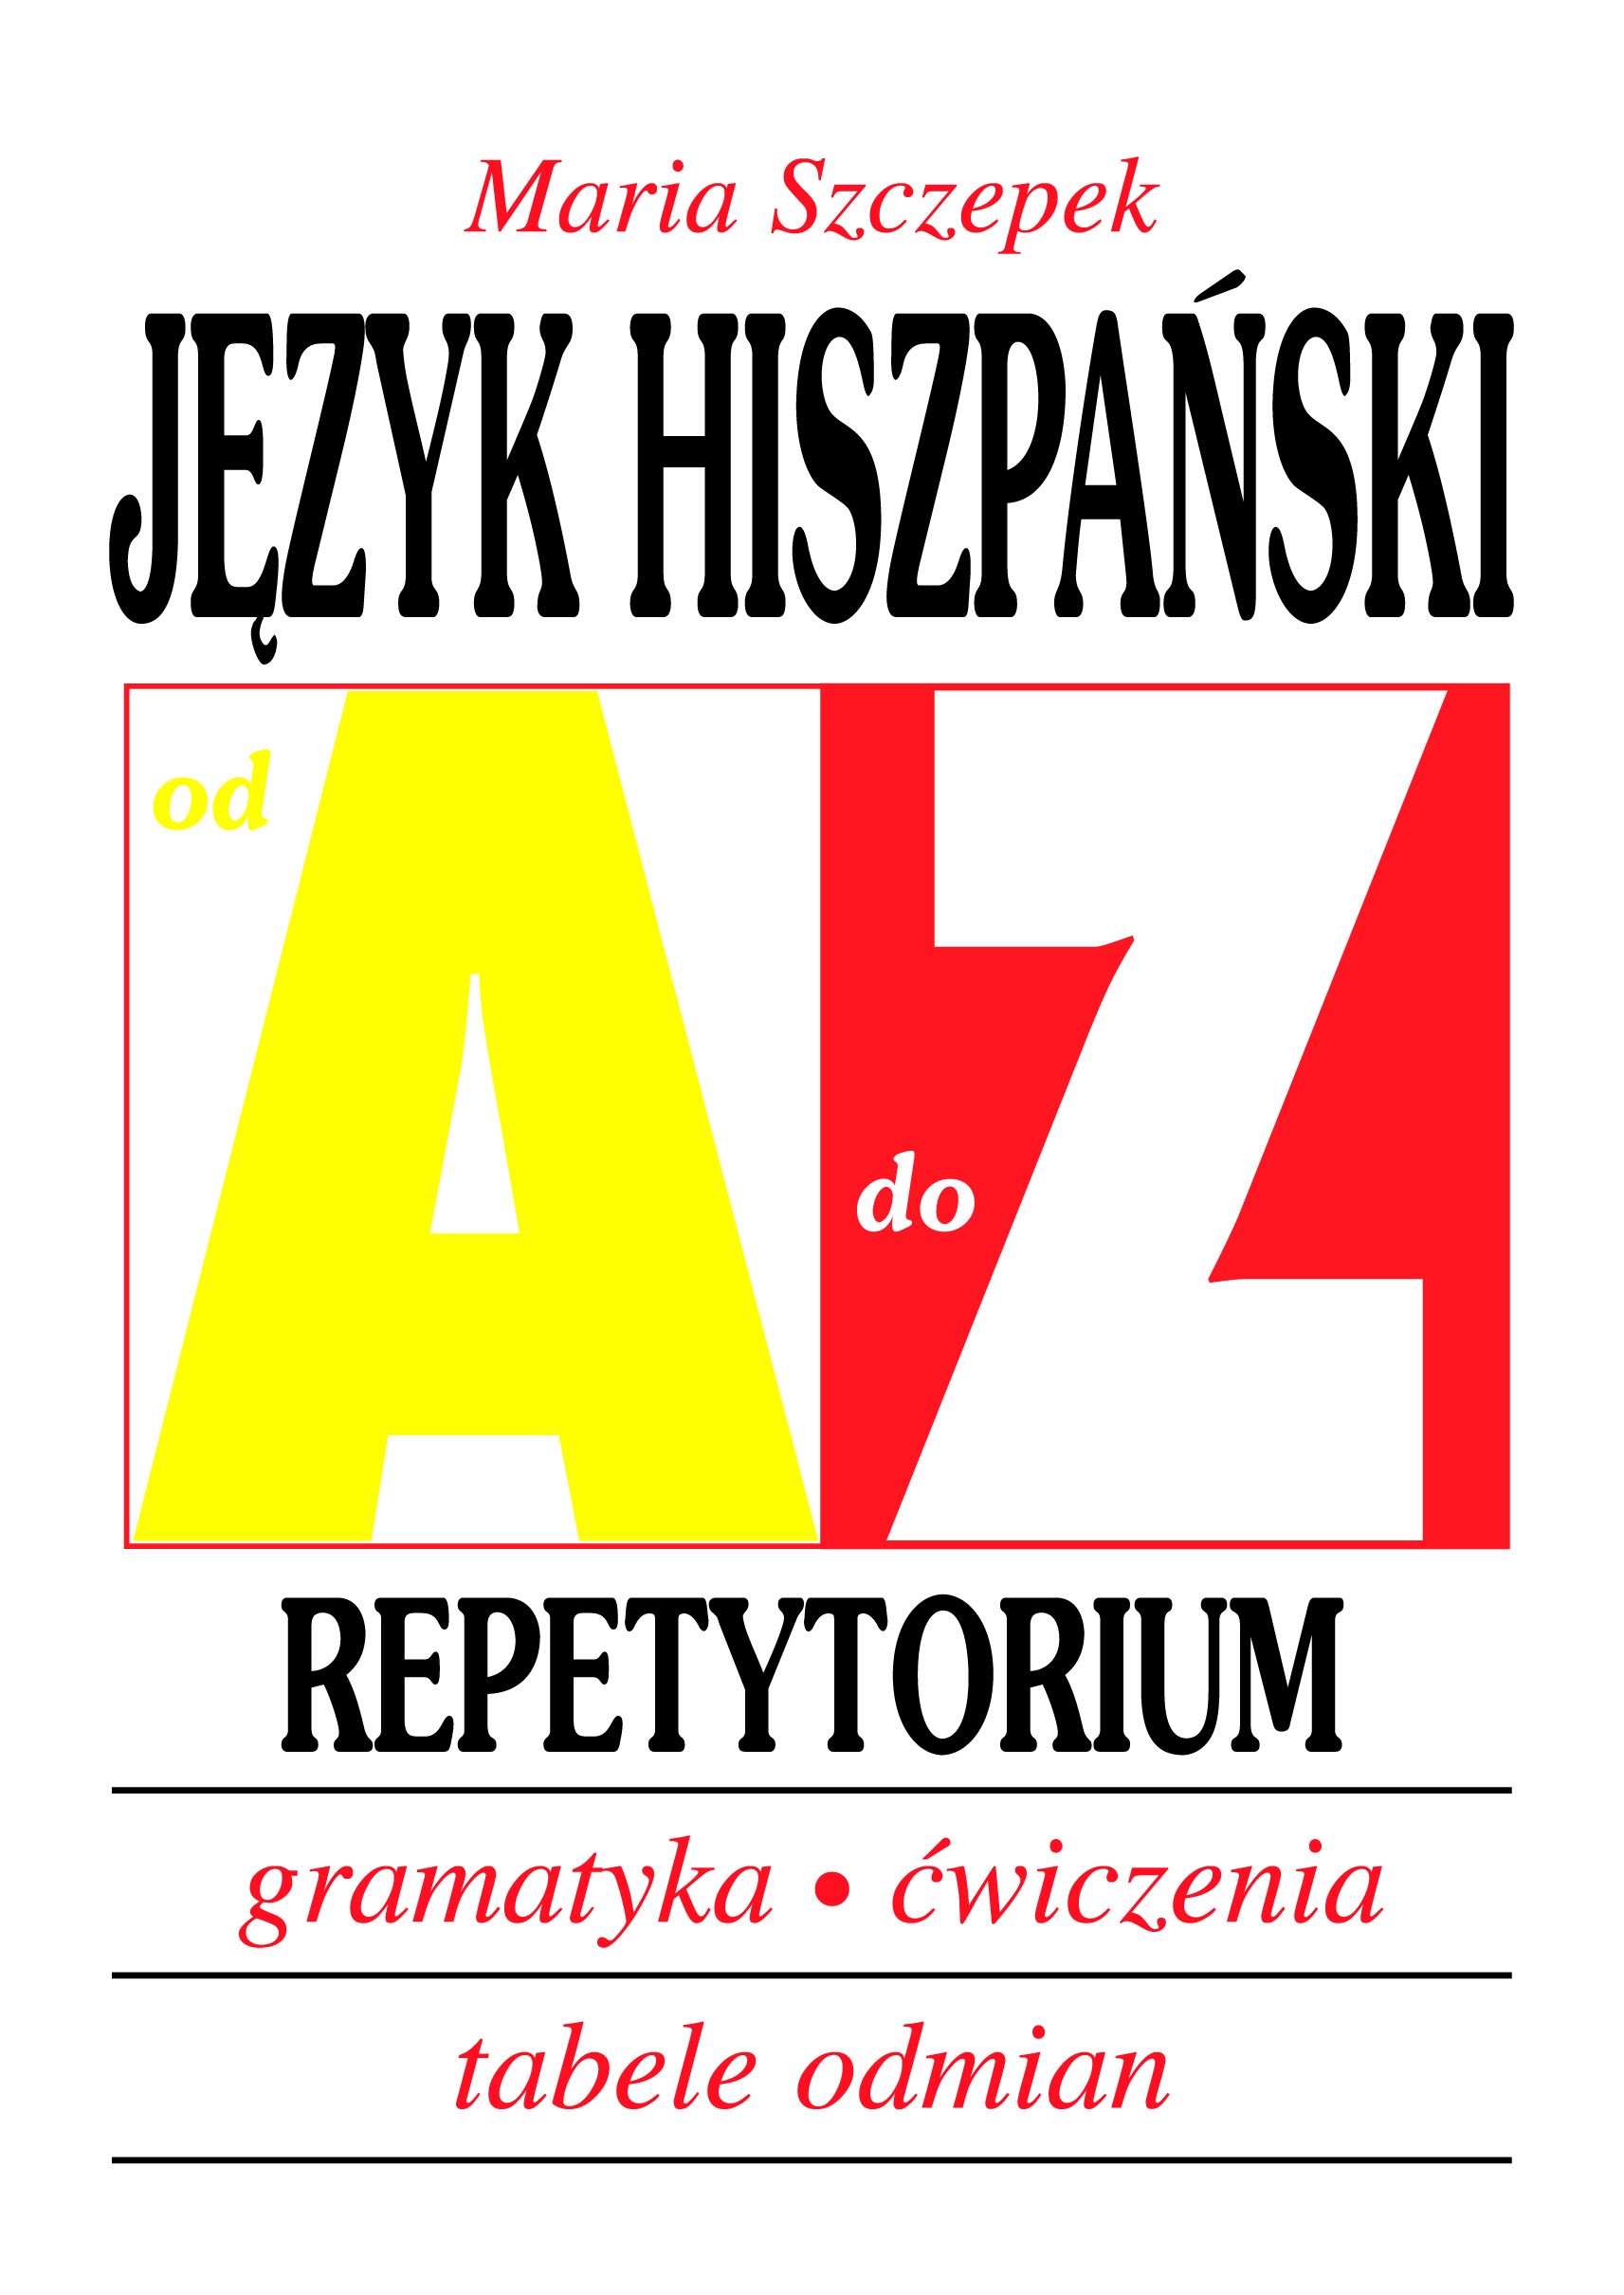 Język hiszpański - Repetytorium. Gramatyka, ćwiczenia, tabele odmian. Od A do Z 